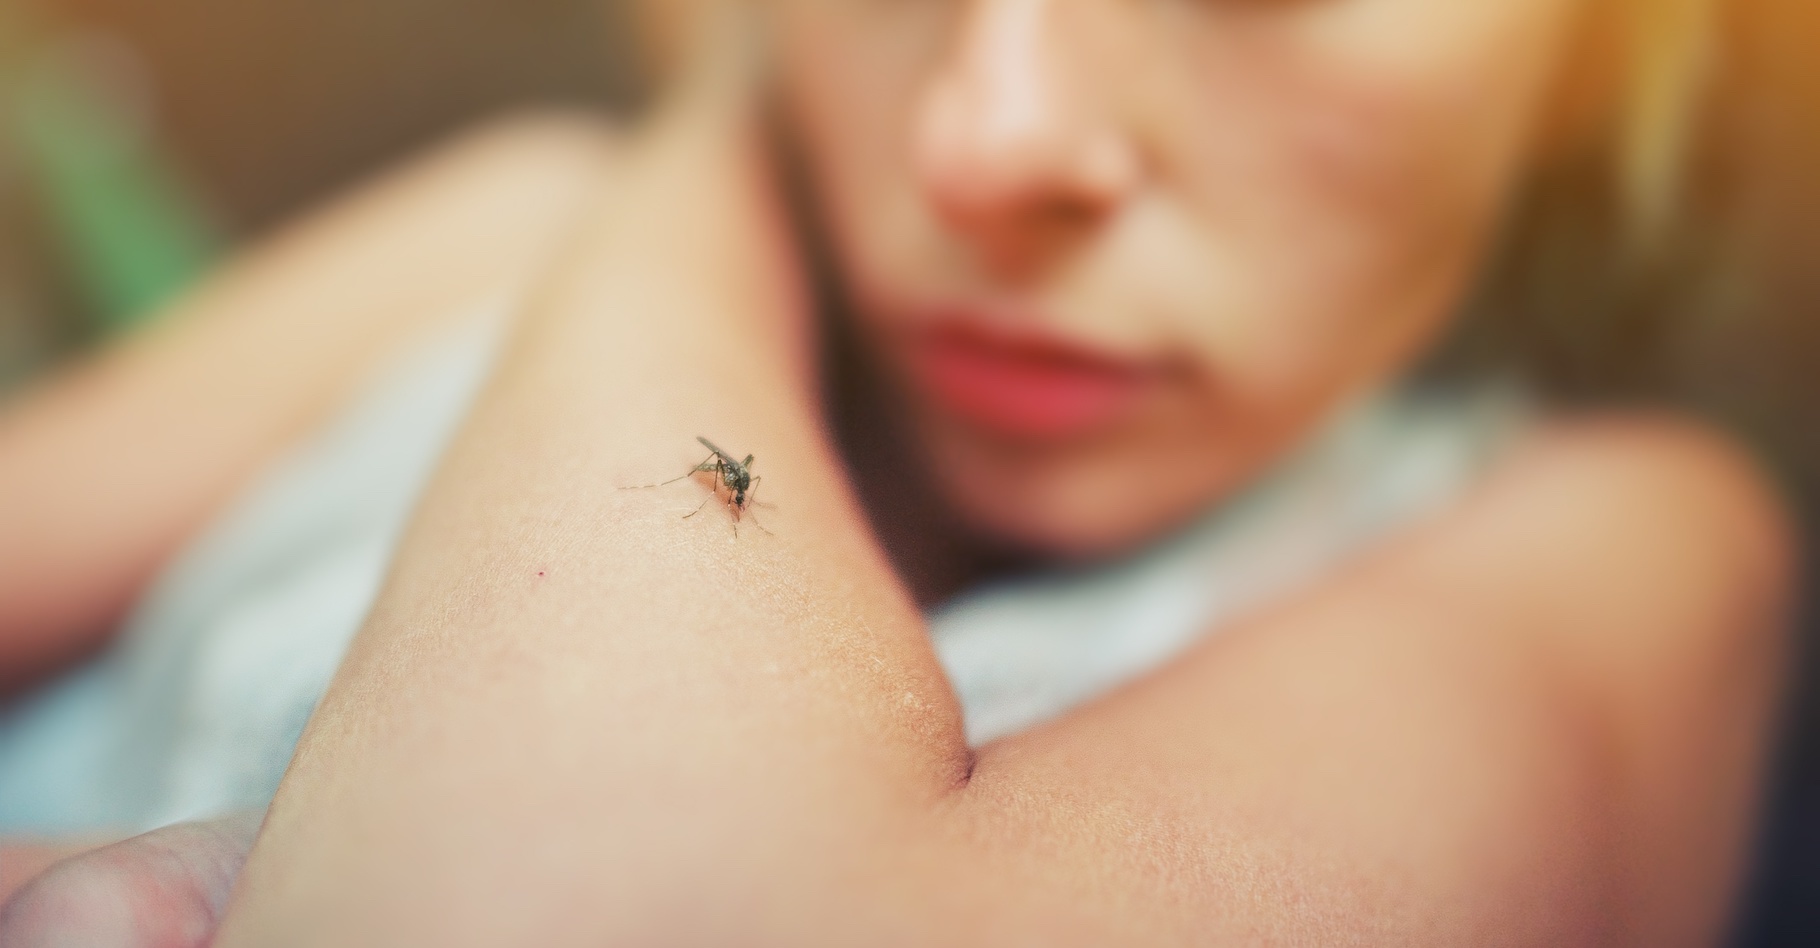 Des chercheurs de l’université de Princeton (États-Unis) ont mis au point un protocole complexe qui leur a permis de comprendre comment les moustiques Aedes aegypti repèrent spécifiquement les odeurs humaines. © raisondtre, Adobe Stock